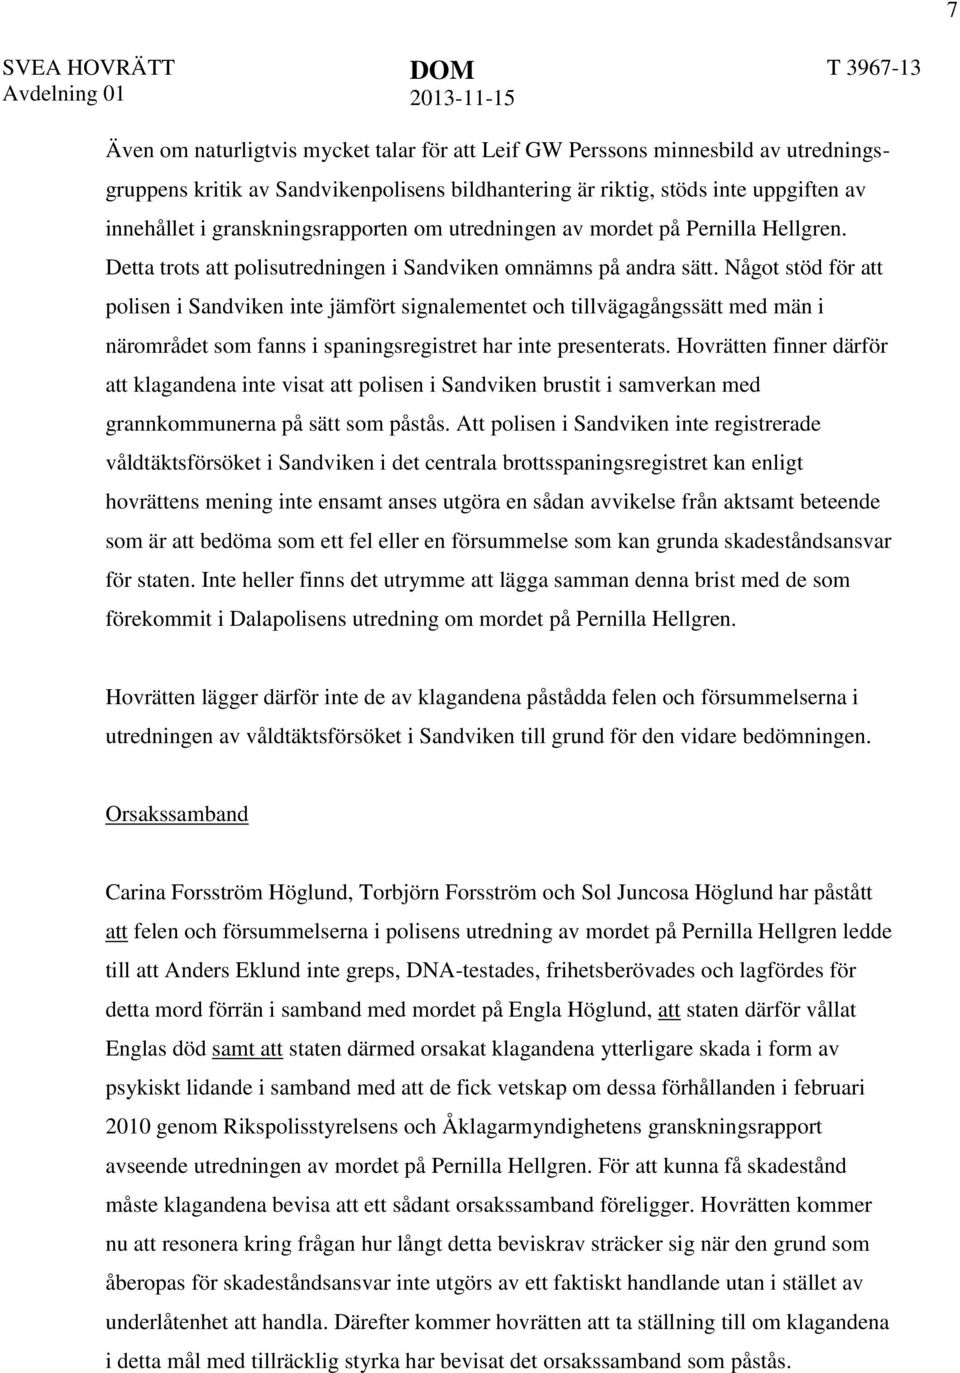 Något stöd för att polisen i Sandviken inte jämfört signalementet och tillvägagångssätt med män i närområdet som fanns i spaningsregistret har inte presenterats.